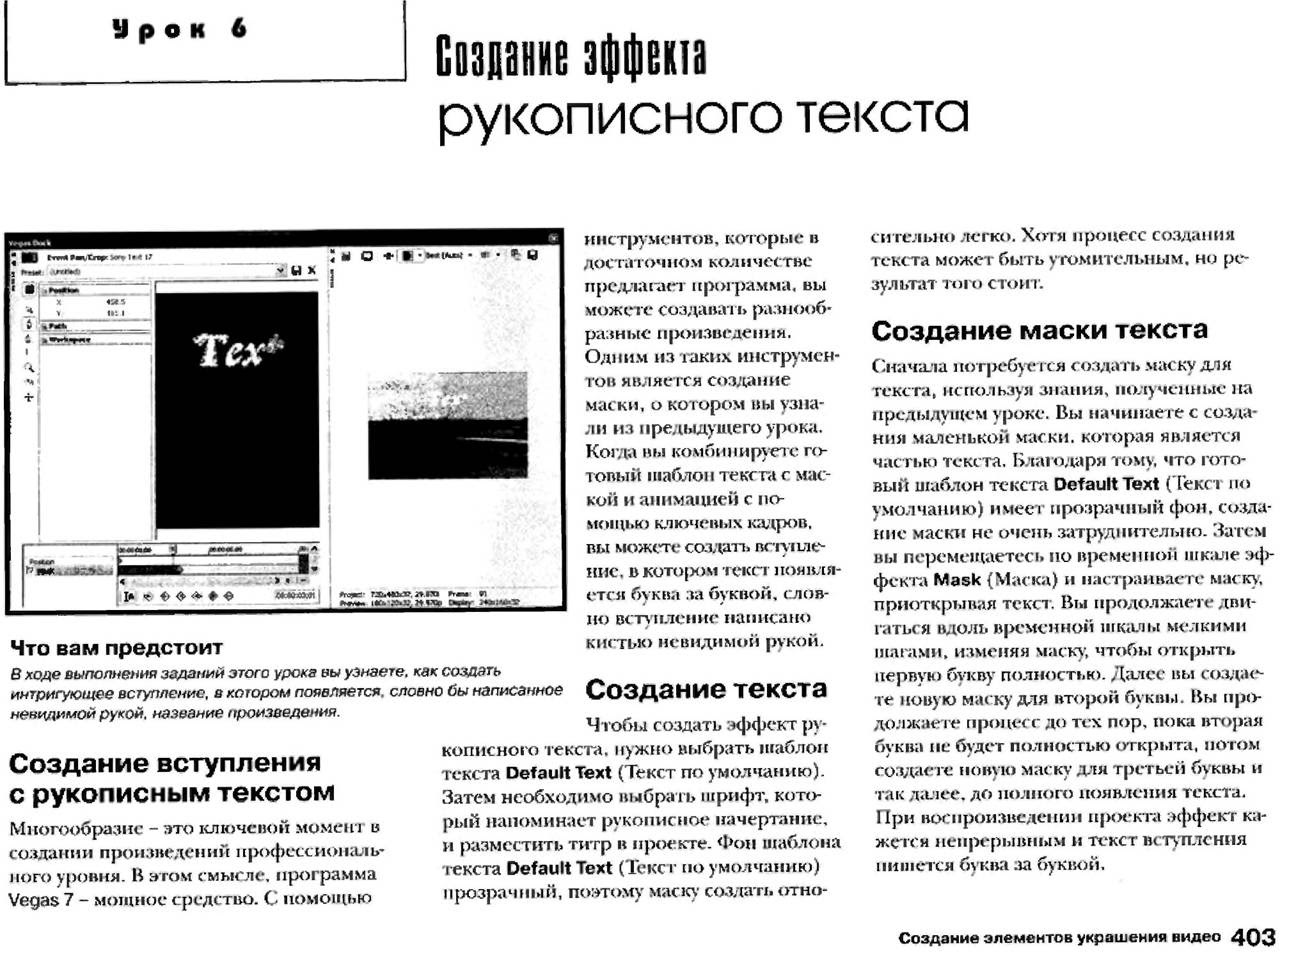 http://redaktori-uroki.3dn.ru/_ph/12/152994704.jpg